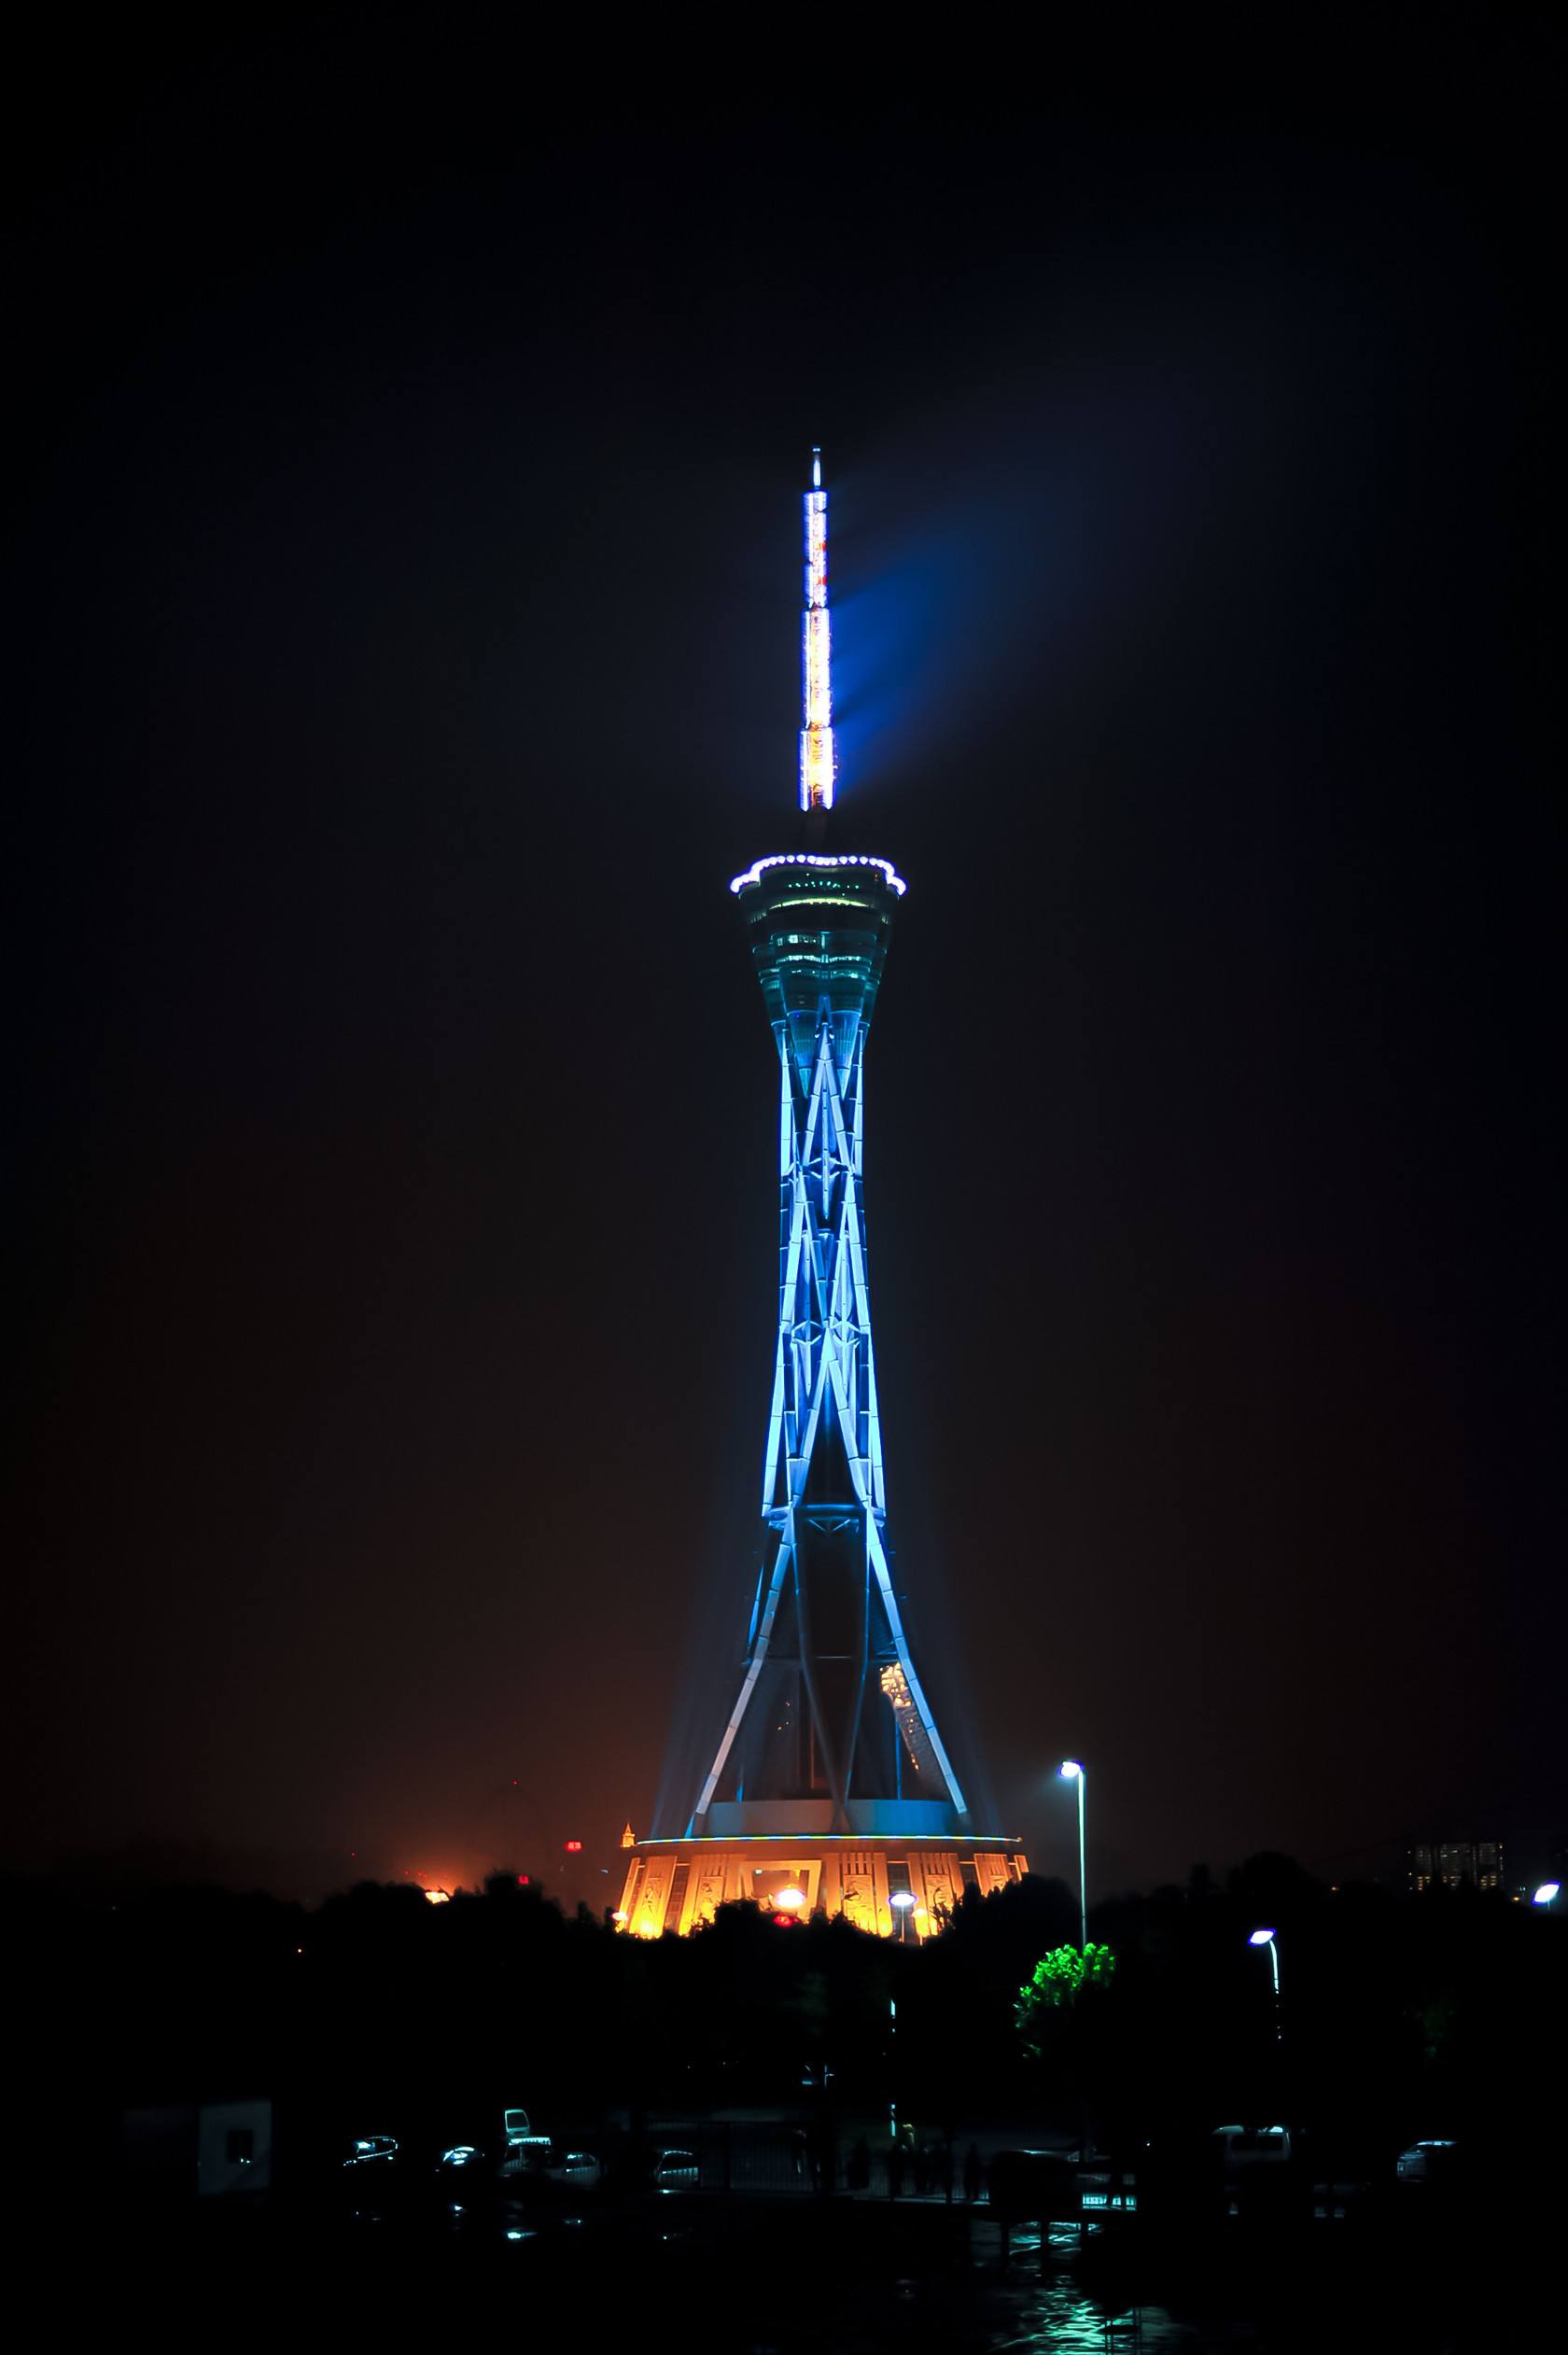 郑州中原福塔,观光旅游的好去处,是世界上最高的全钢结构发射塔